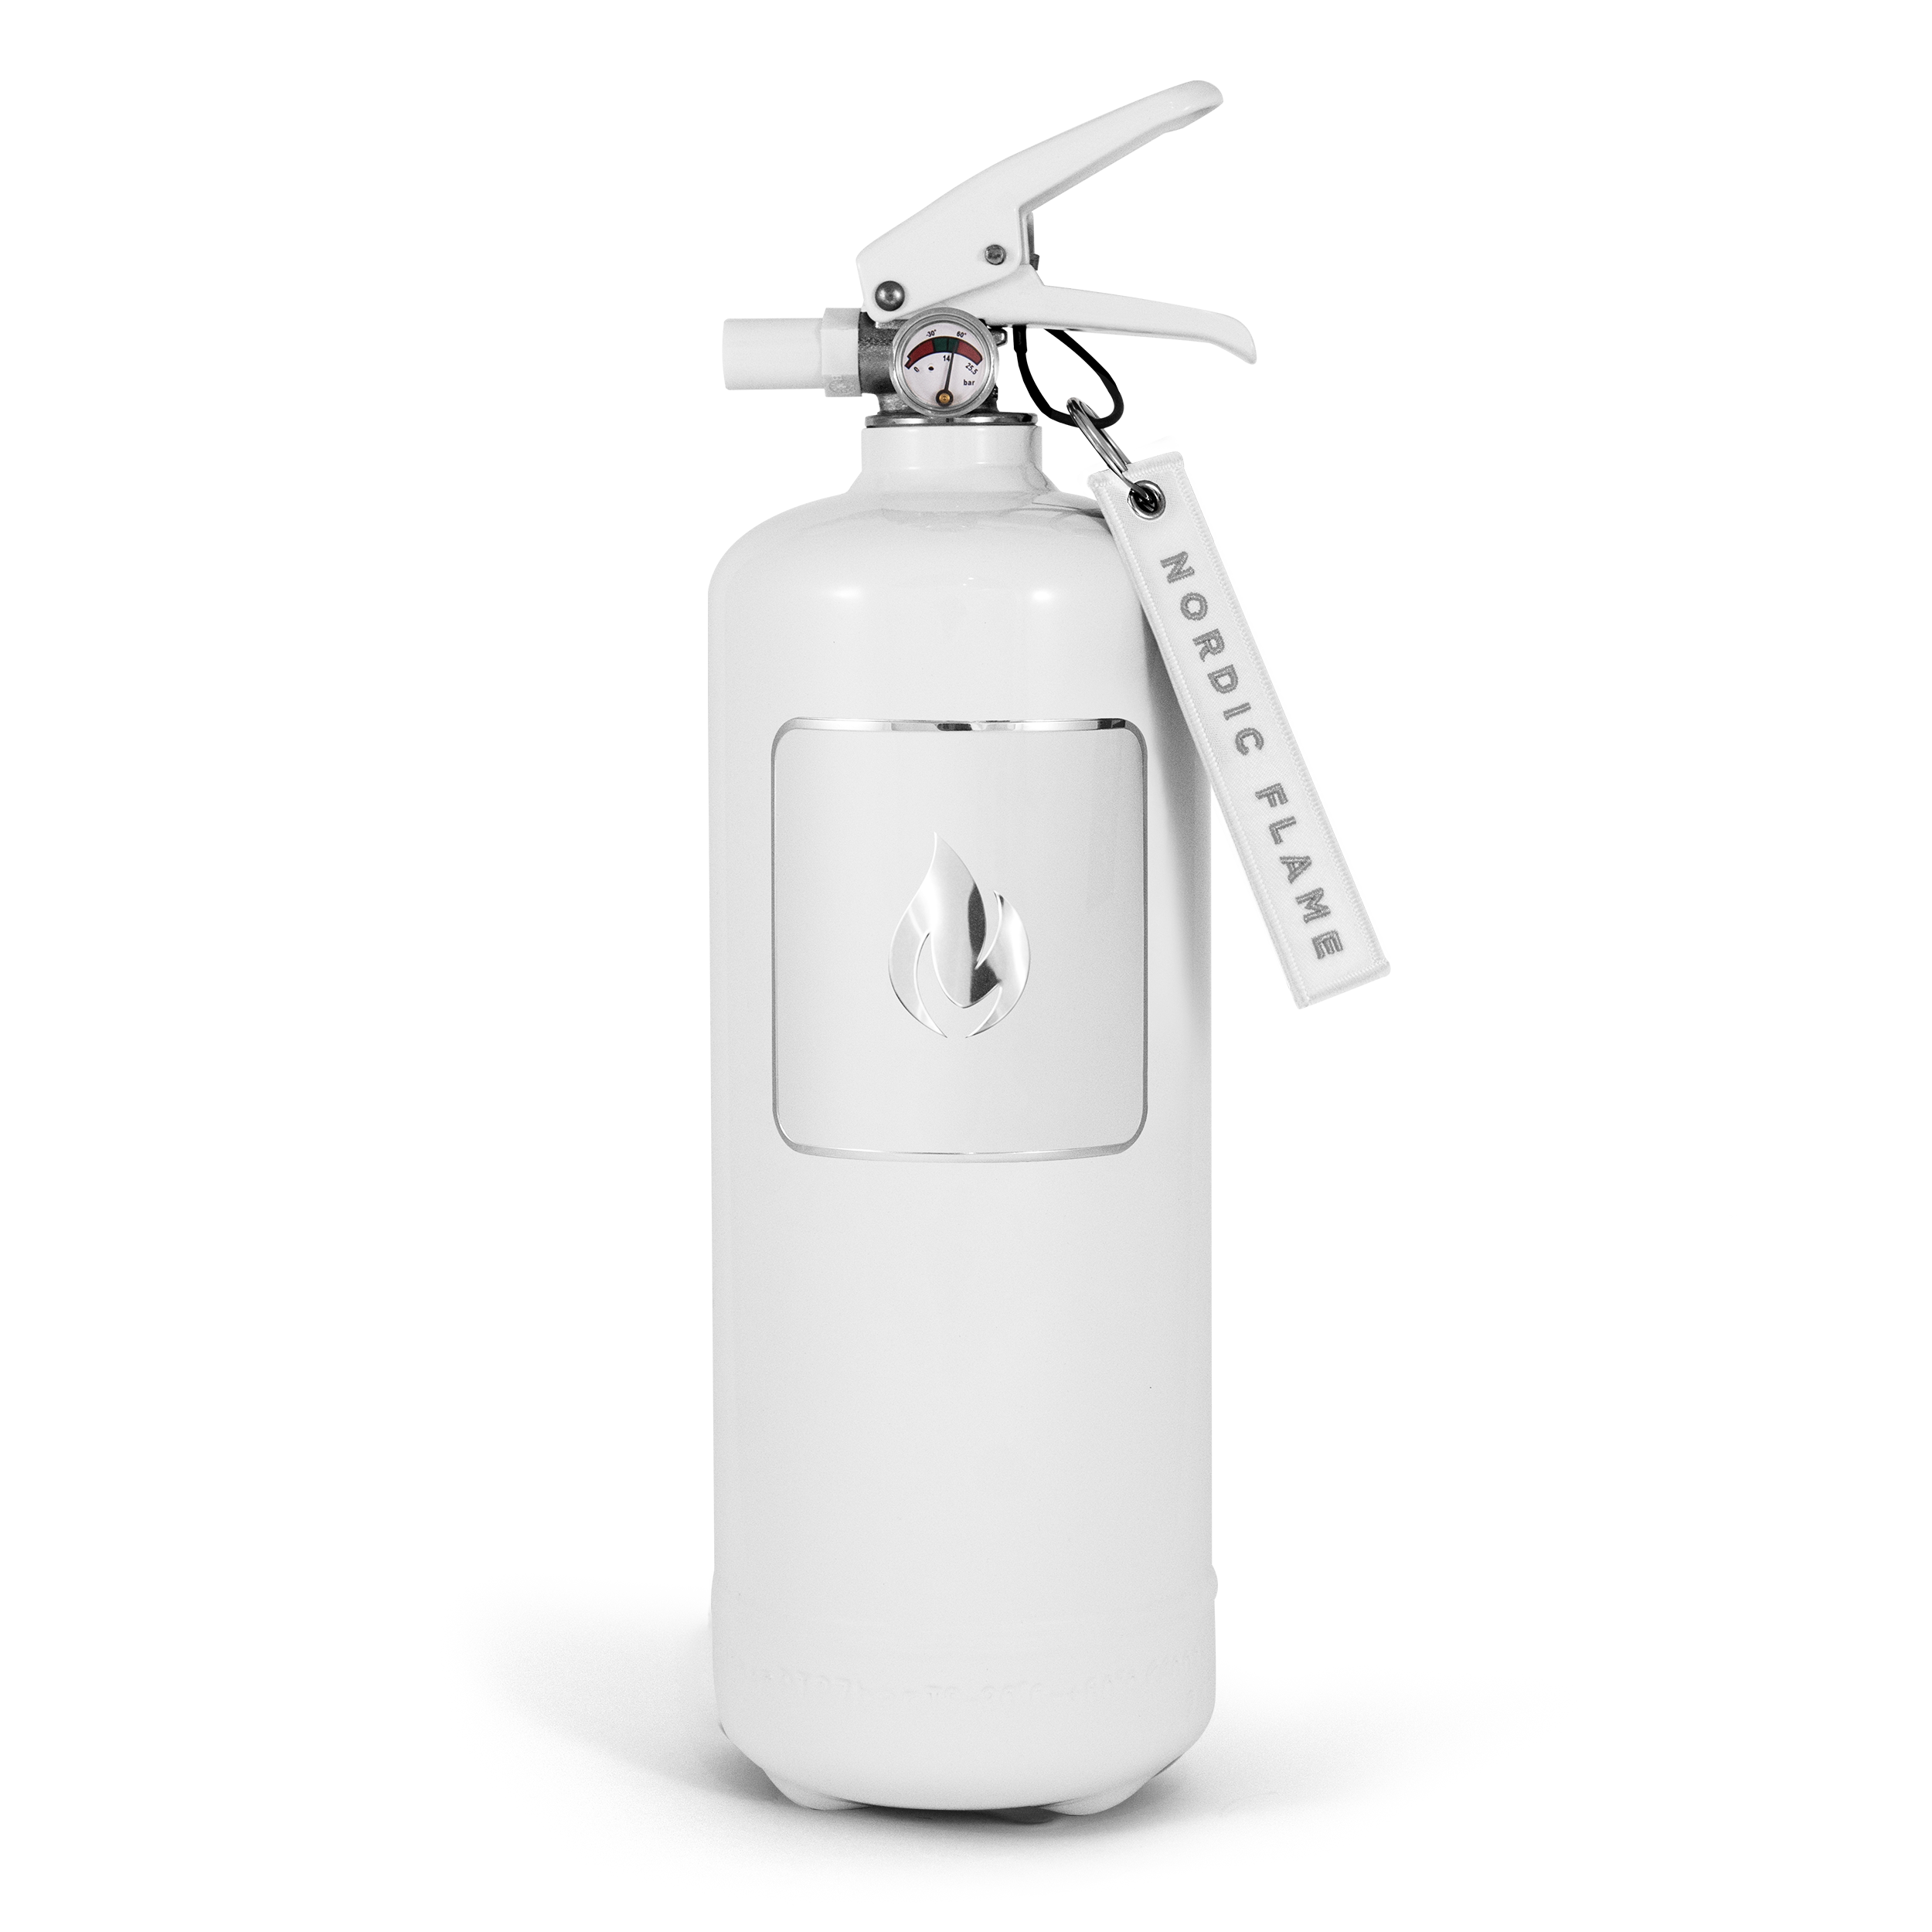 Feuerlöscher 2kg Weiß - Sicher Pro Schutz